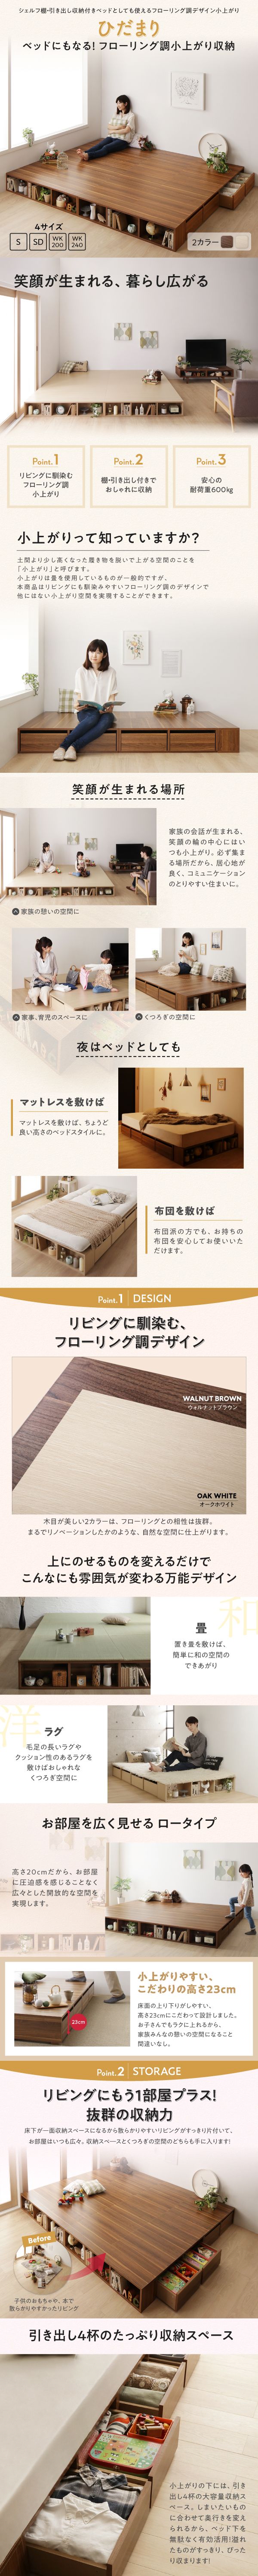 国産NEWお客様組立 収納ベッド/セミダブル シェルフ棚・引出収納付きベッドとしても使えるフローリング調デザイン小上がり Hidamari ひだまり セミダブル